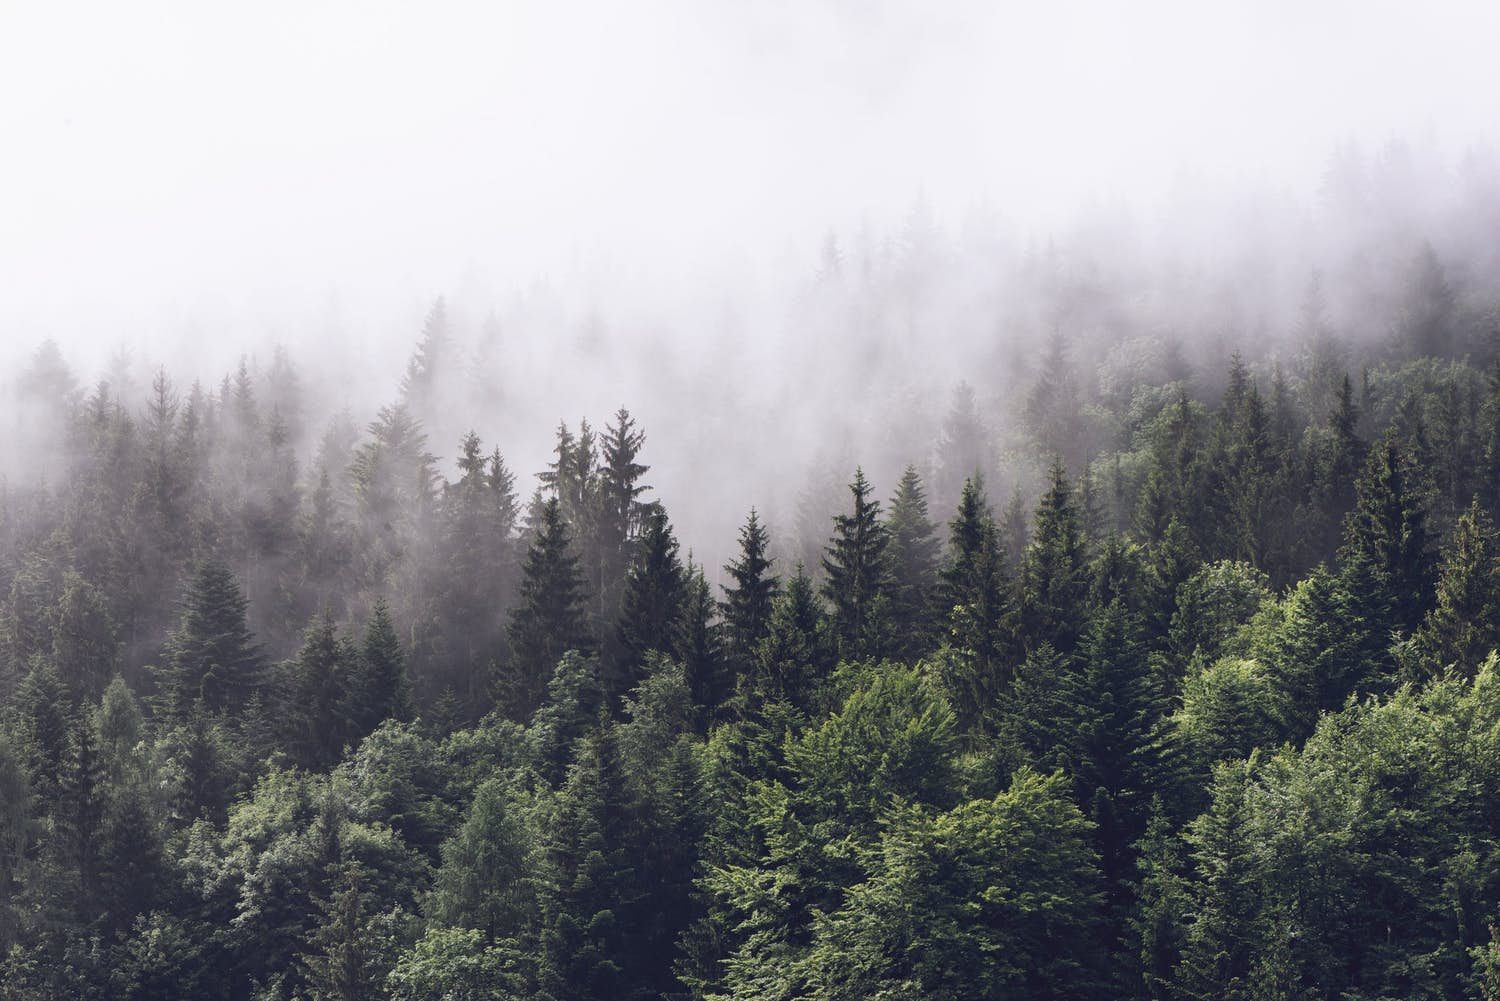 papier peint forêt brumeuse,épinette noire à feuilles courtes,brouillard,arbre,brouillard,forêt